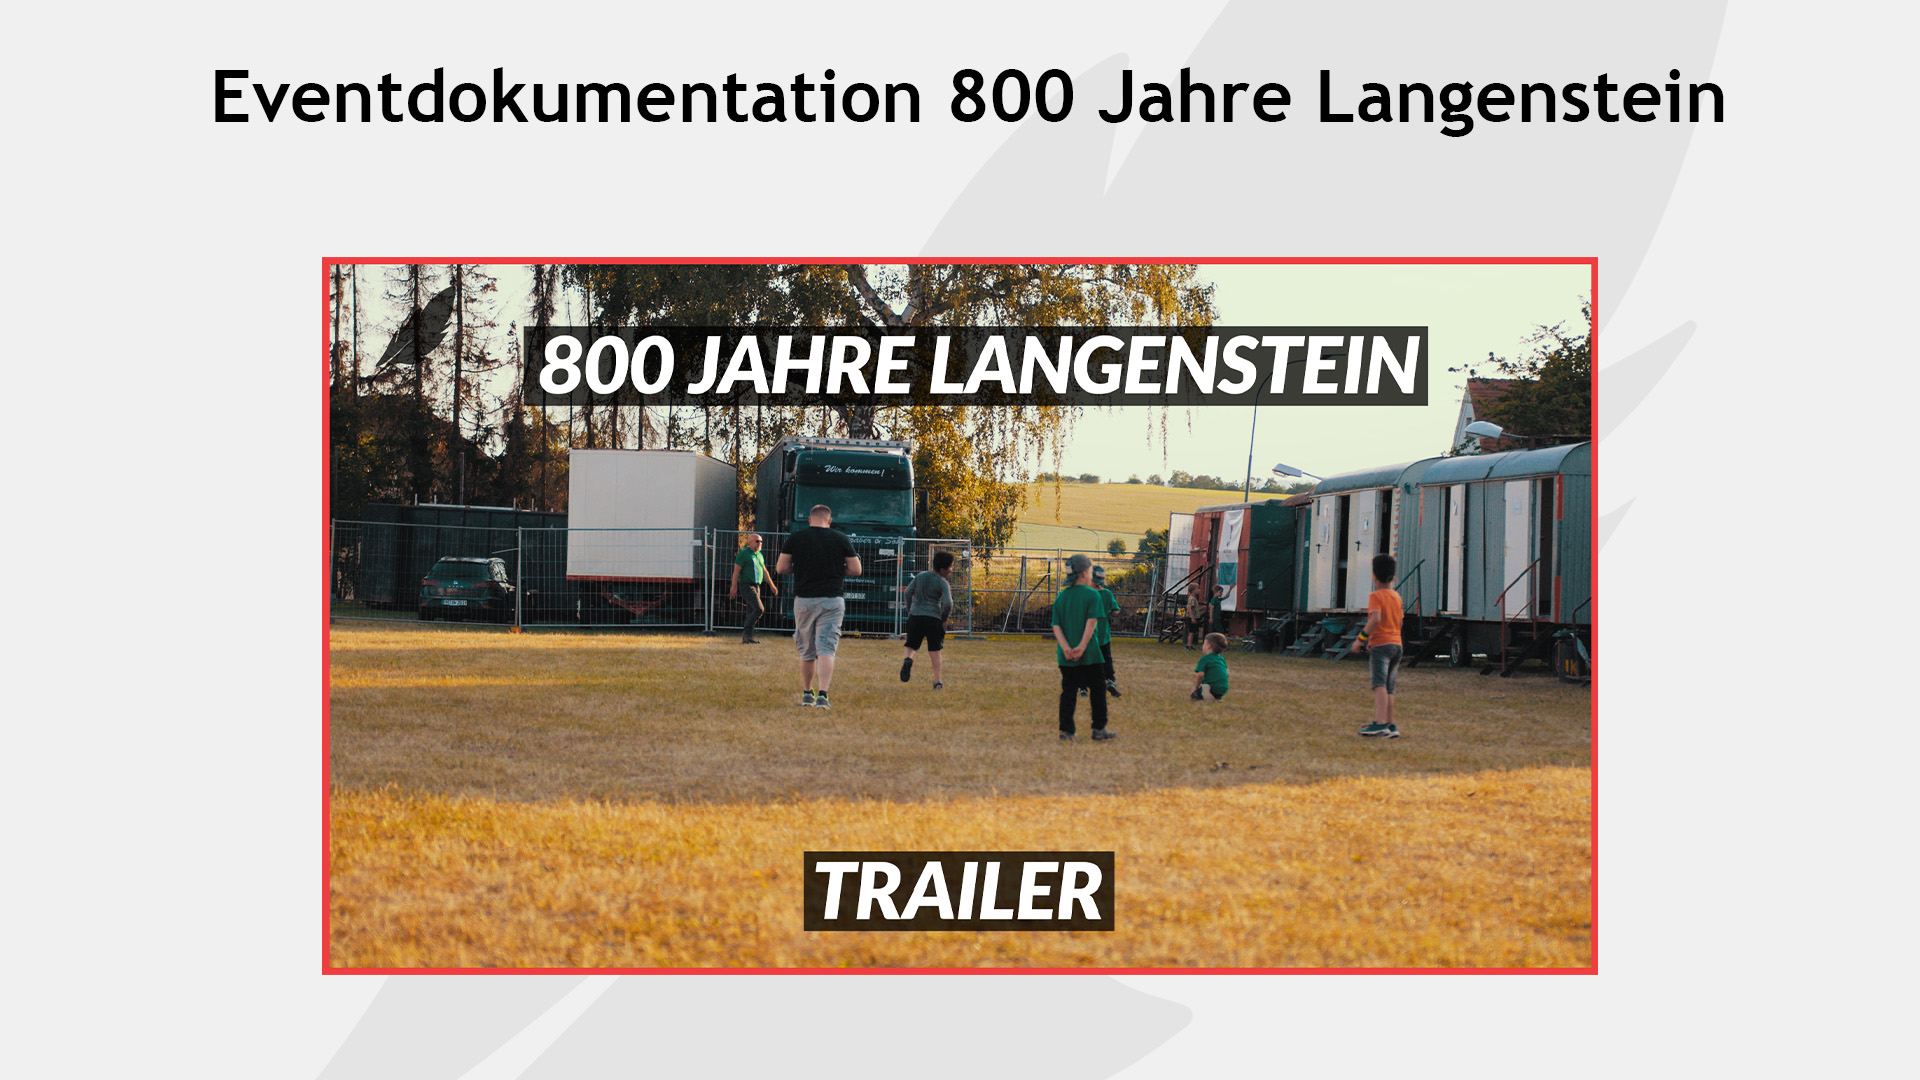 Mehr über den Artikel erfahren Eventdokumentation 800 Jahre Langenstein